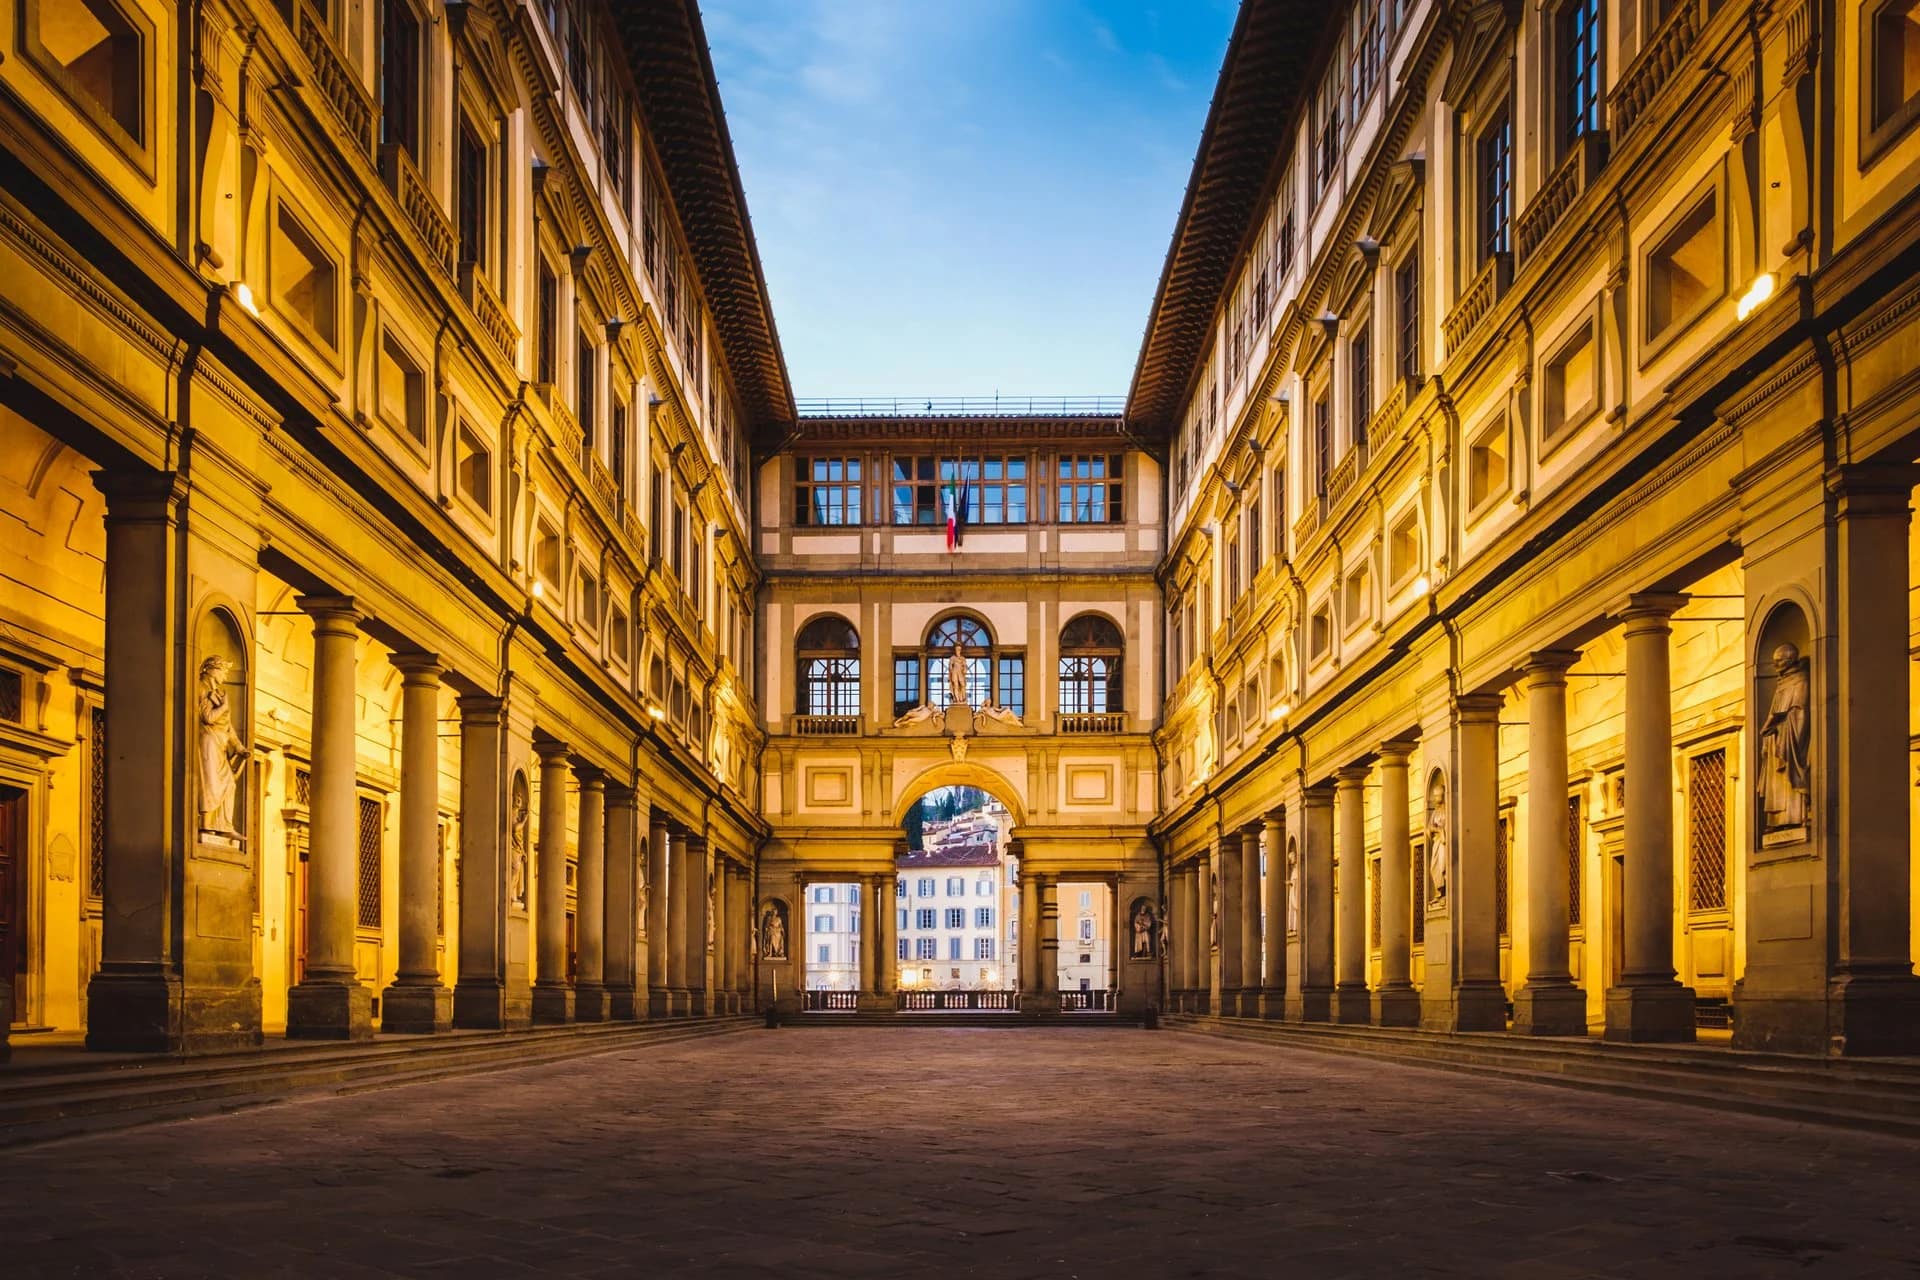 The Uffizi Gallery, Florence